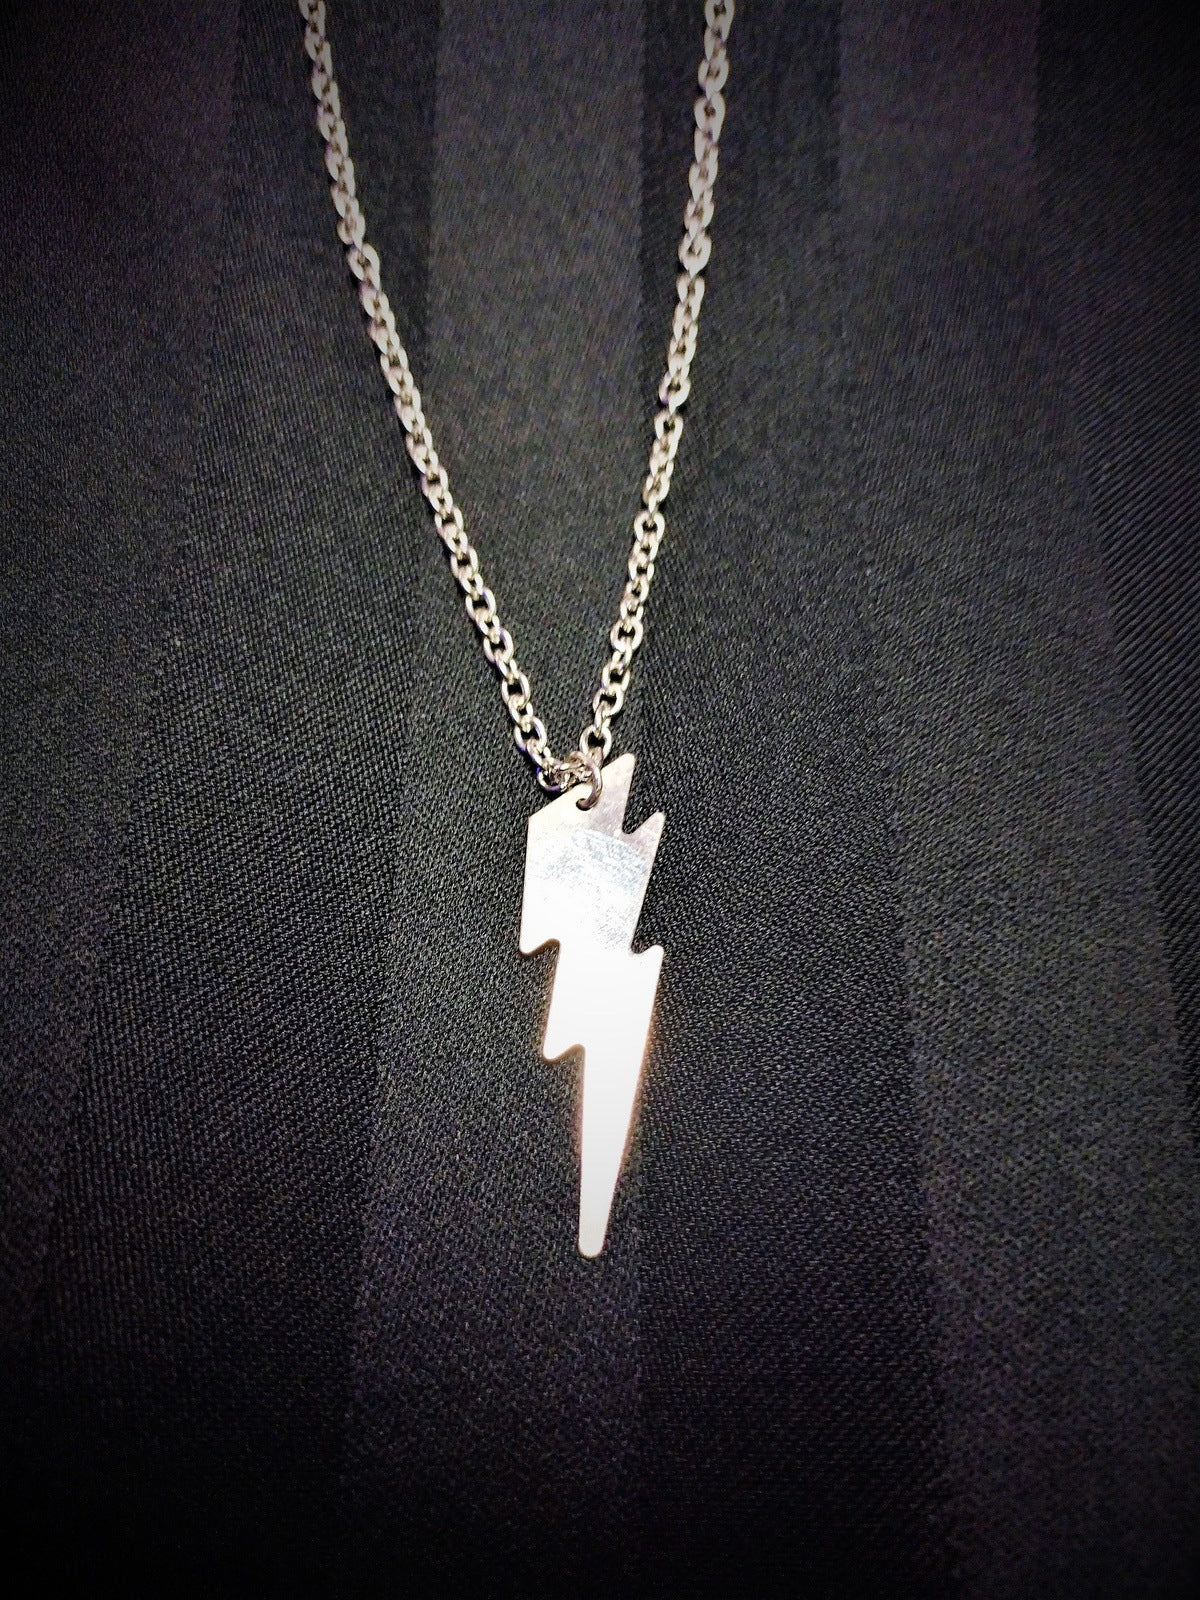 Re-Made Vintage Lightning Bolt Necklace